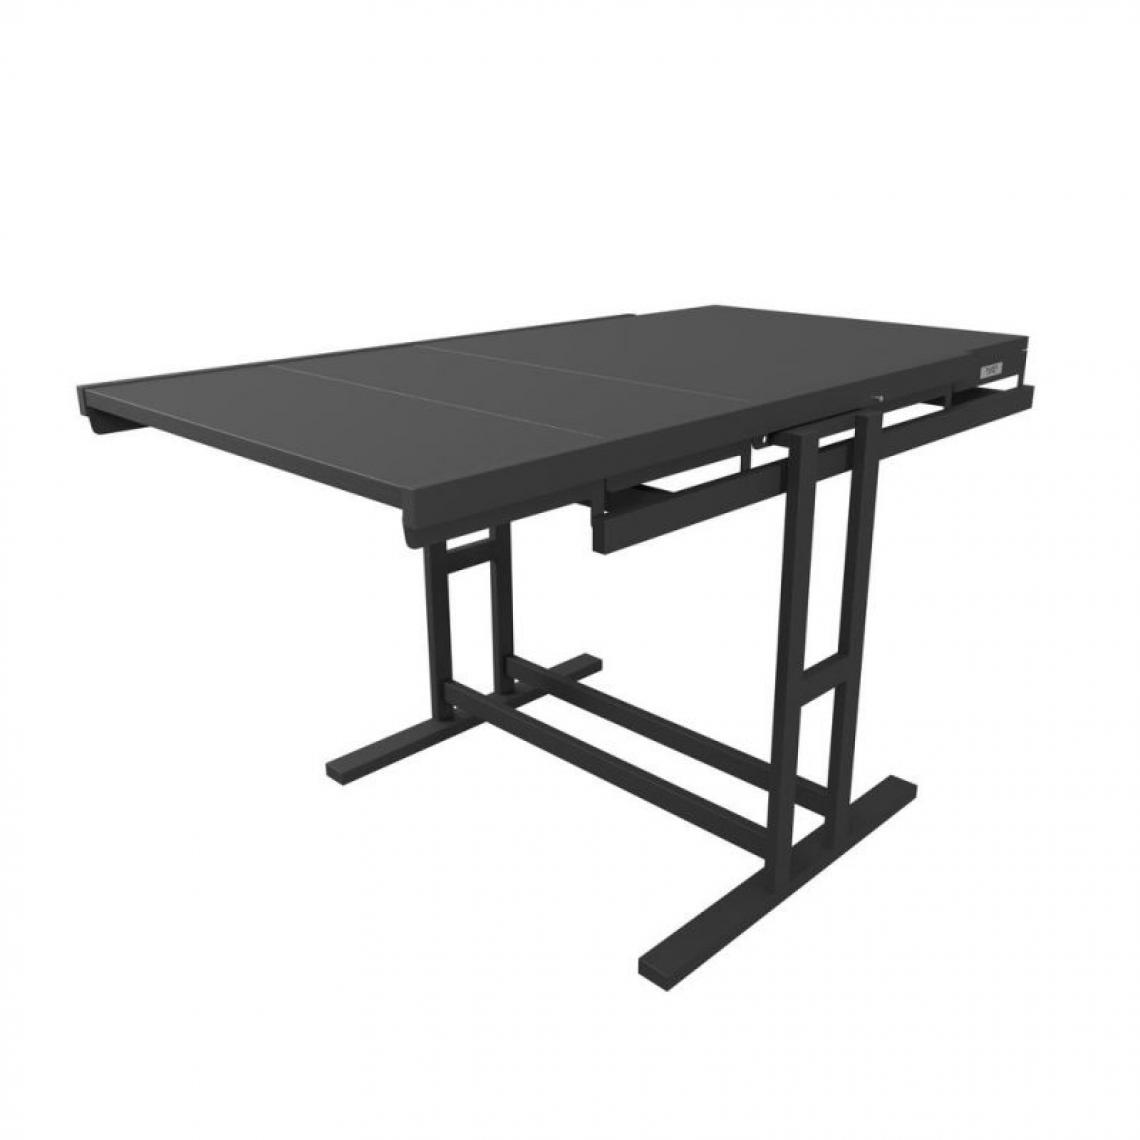 Blumie - Table modulable (L120 x l78 x H77,5 cm) convertible en Etagère - style industriel - Tables à manger